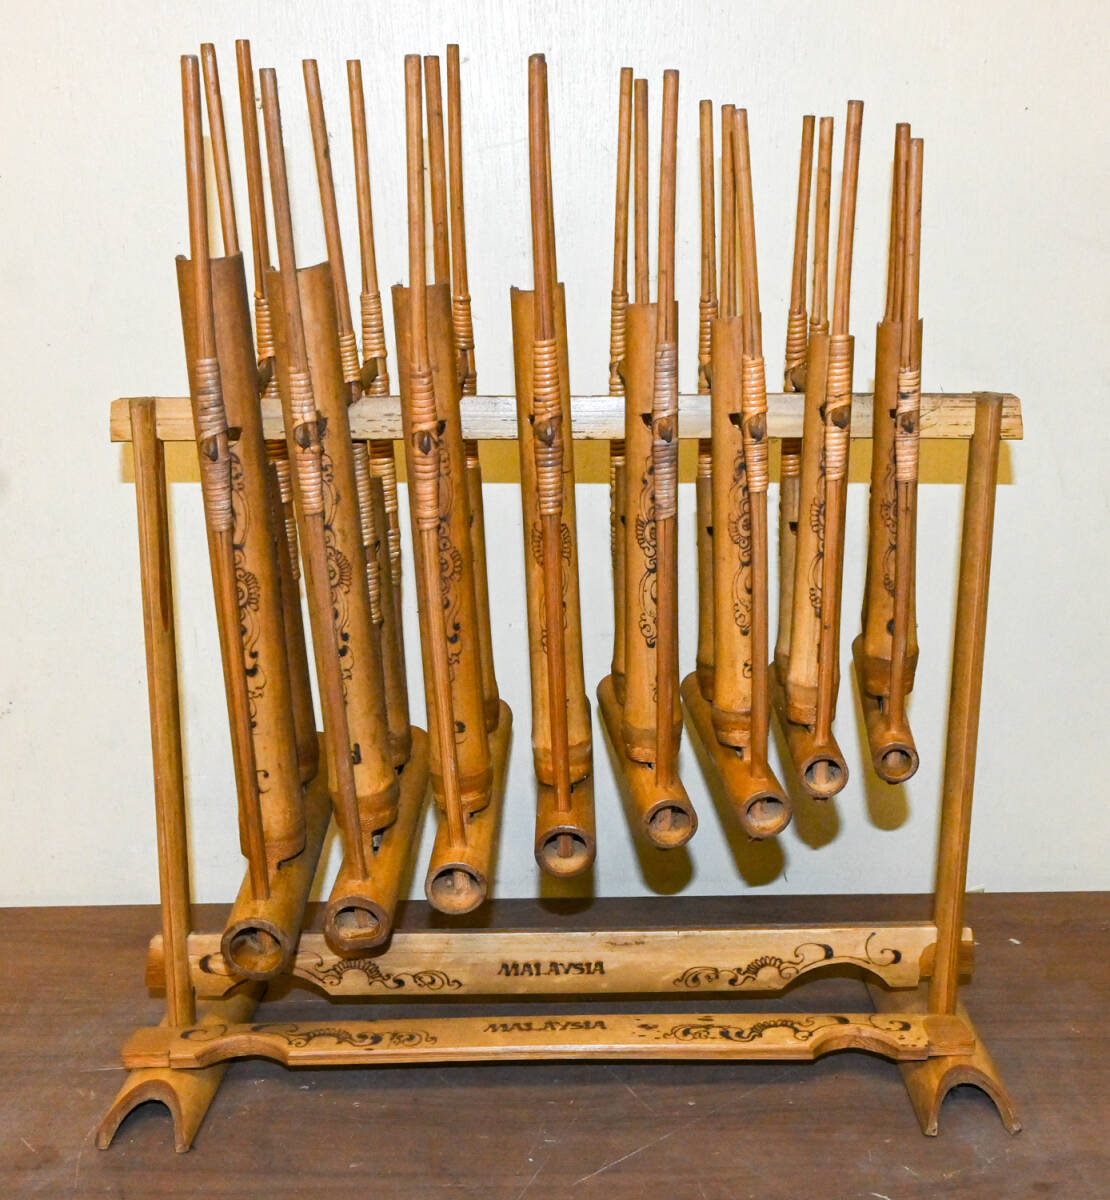 アンクルン / Angklung マレーシア 竹楽器 ユネスコ無形文化遺産 幅約40cm 高さ約45cm 奥行概19cmの画像1